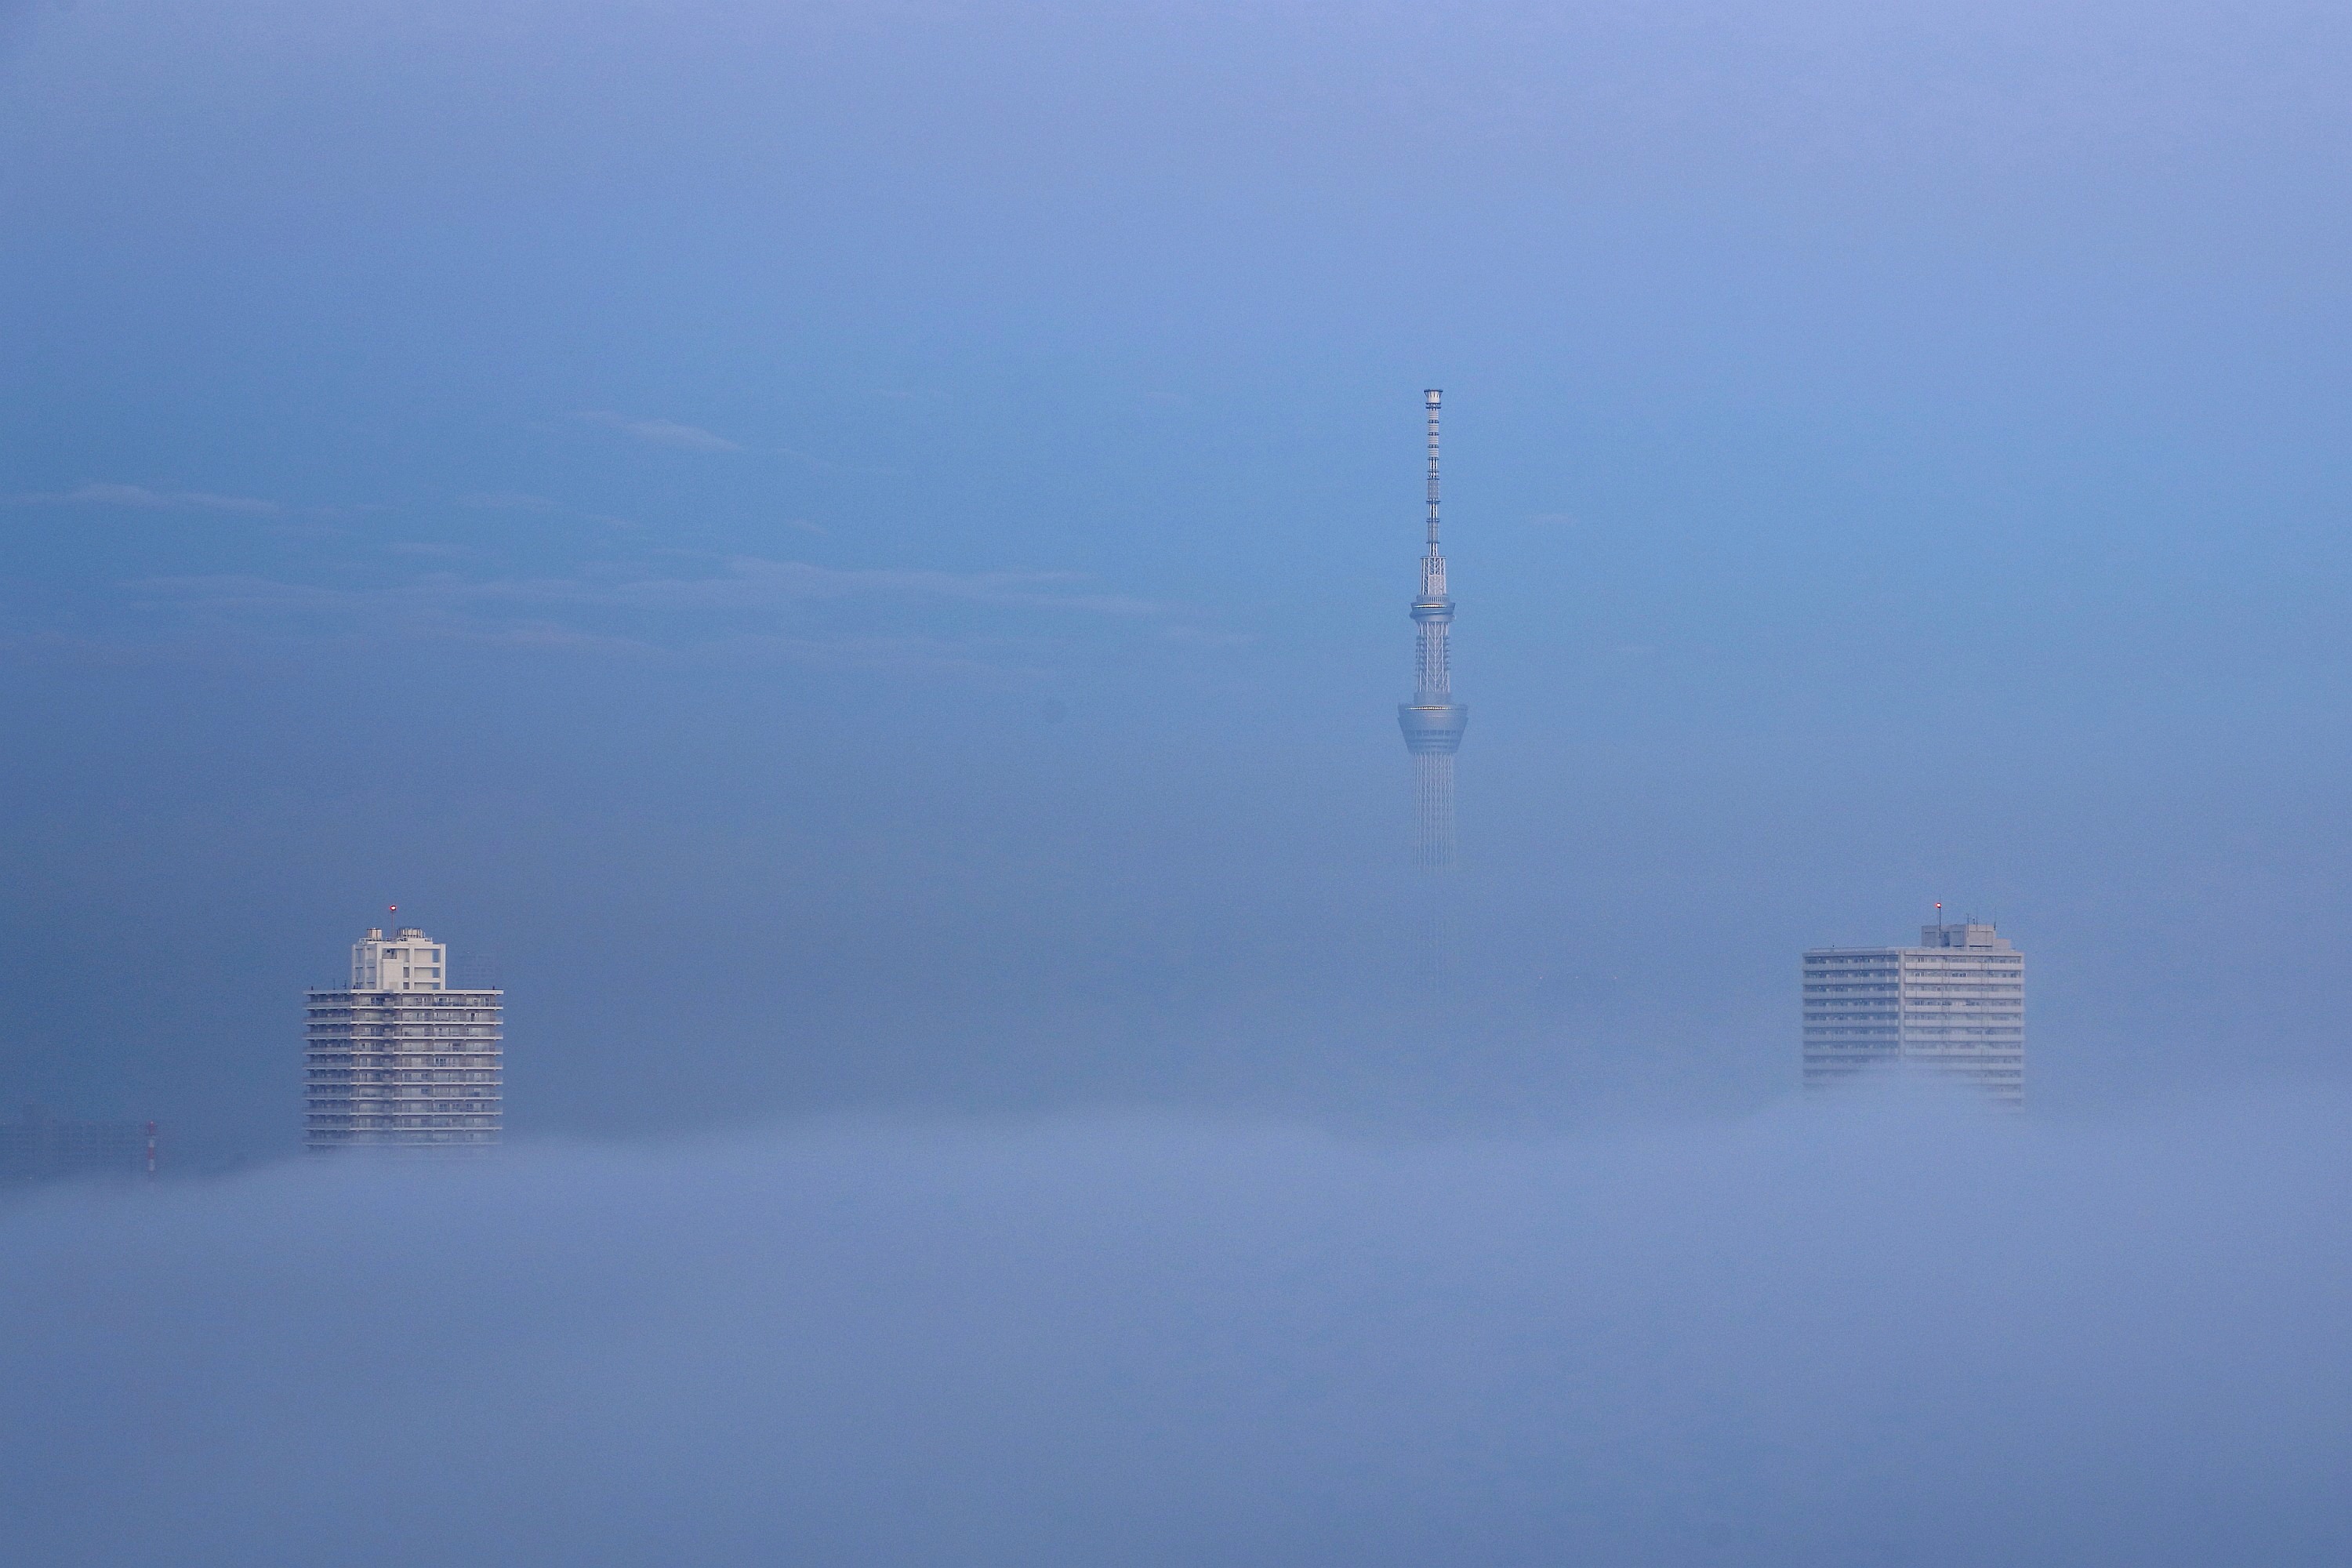 東京スカイツリーとタワマンから見た雲海写真24枚 東京が雲海に包まれました 19 10 30 超高層マンション 超高層ビル